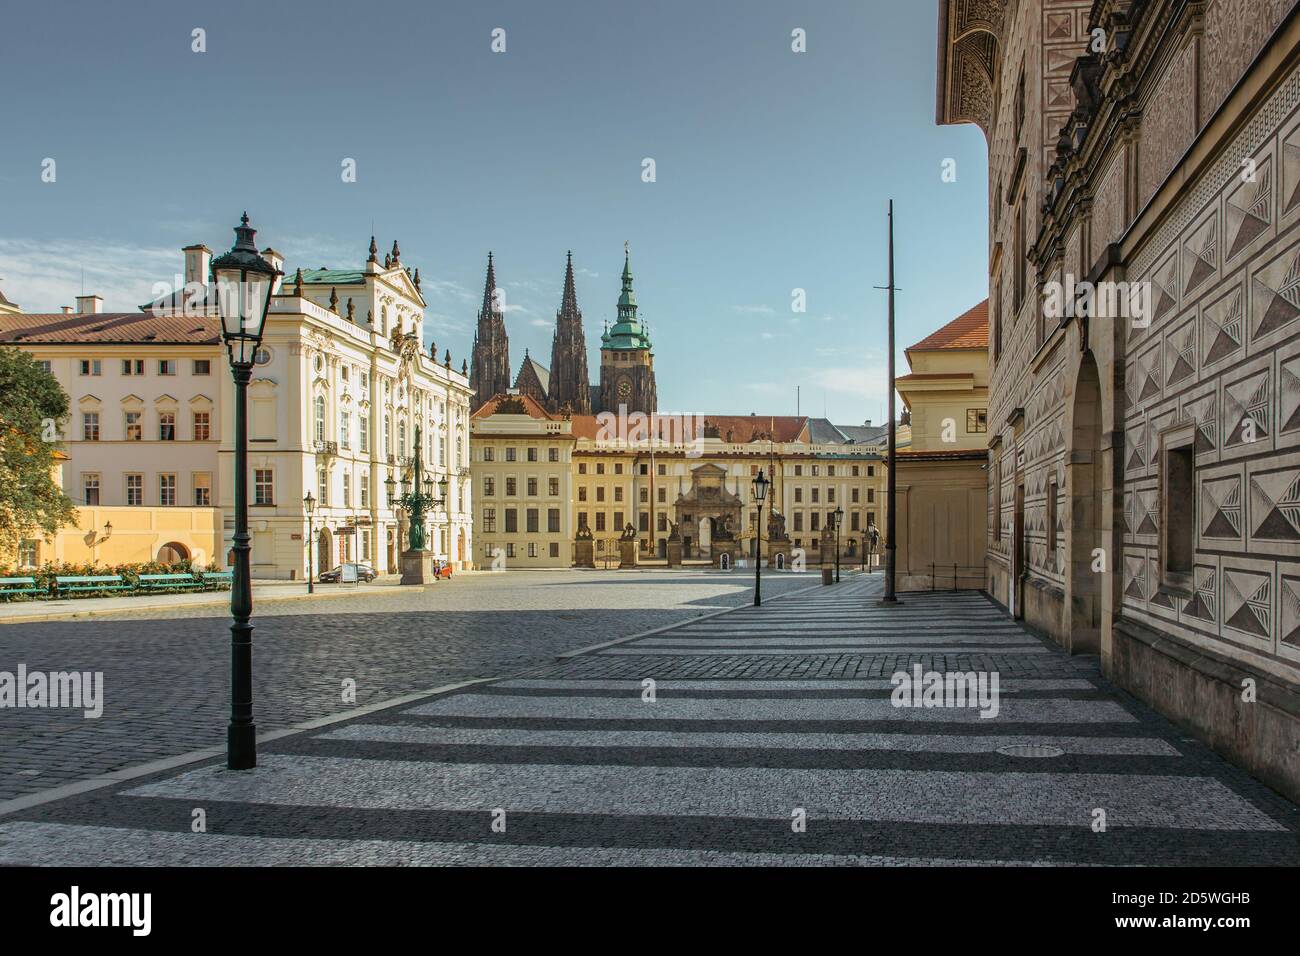 Leere Straße mit bunten Häusern in Prag, Tschechische Hauptstadt. Keine Touristen, keine Besichtigungen während COVID 19 Quarantäne, September 2020. Historisches Zentrum mit Stockfoto